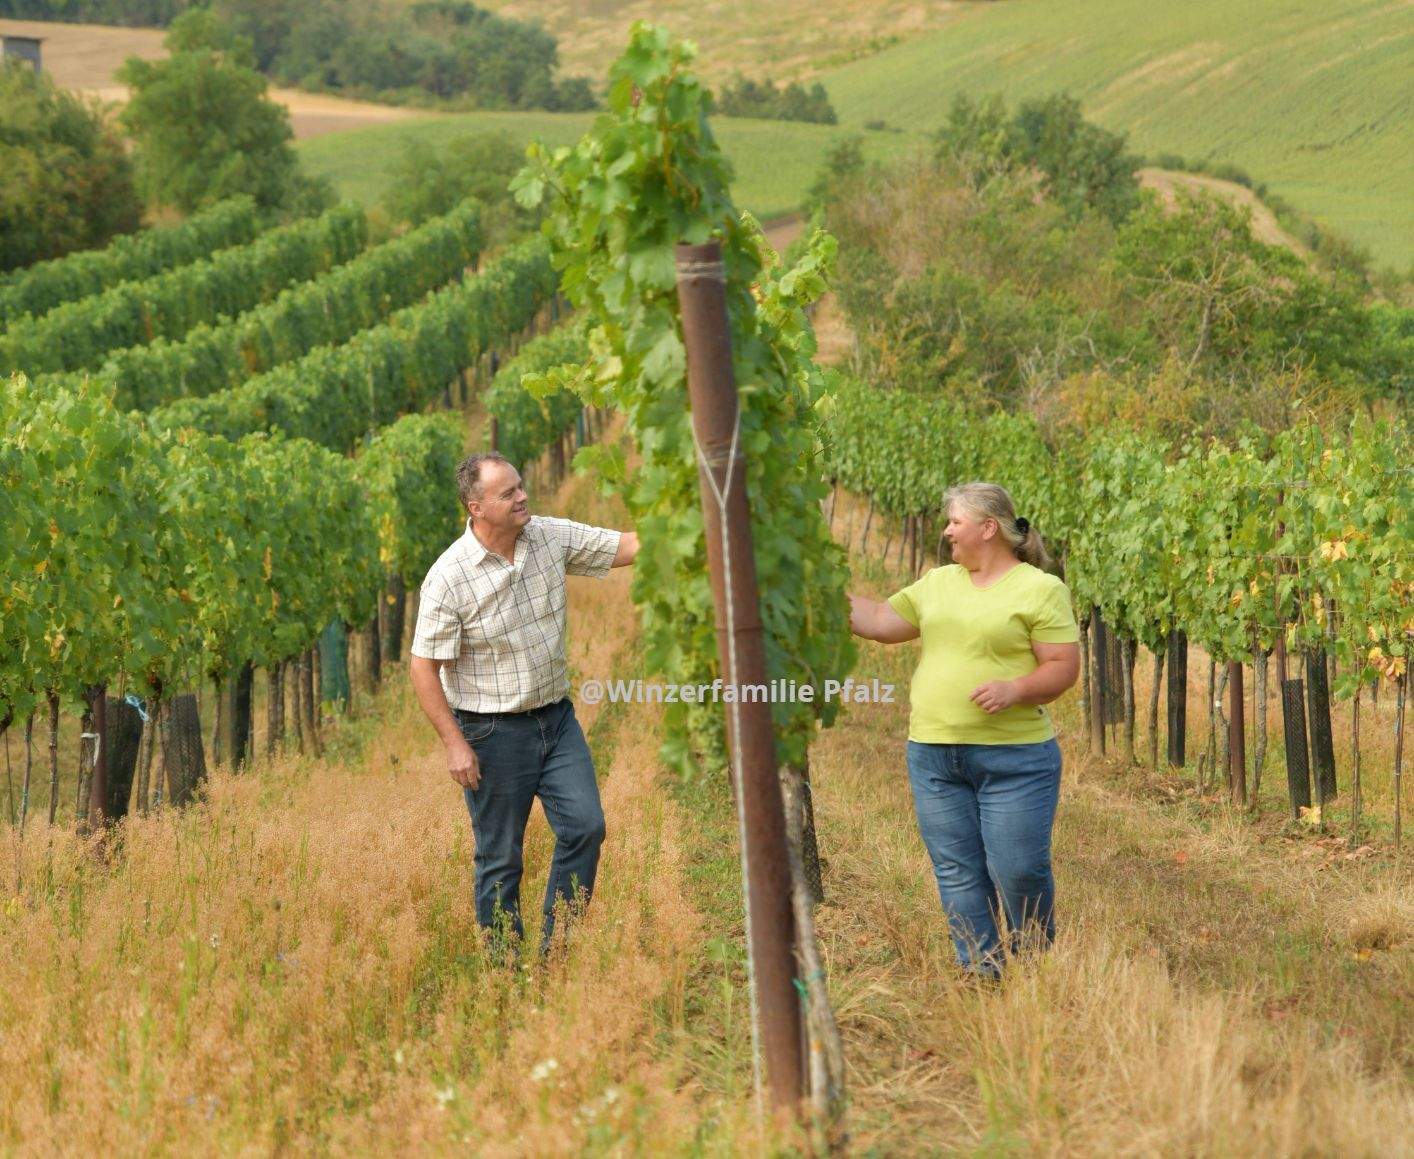 Wein ist unter den Getränken das Nützlichste und unter den Nahrungsmitteln das Angenehmste, Winzerfamilie Pfalz, Wein, Weingut, Weingarten